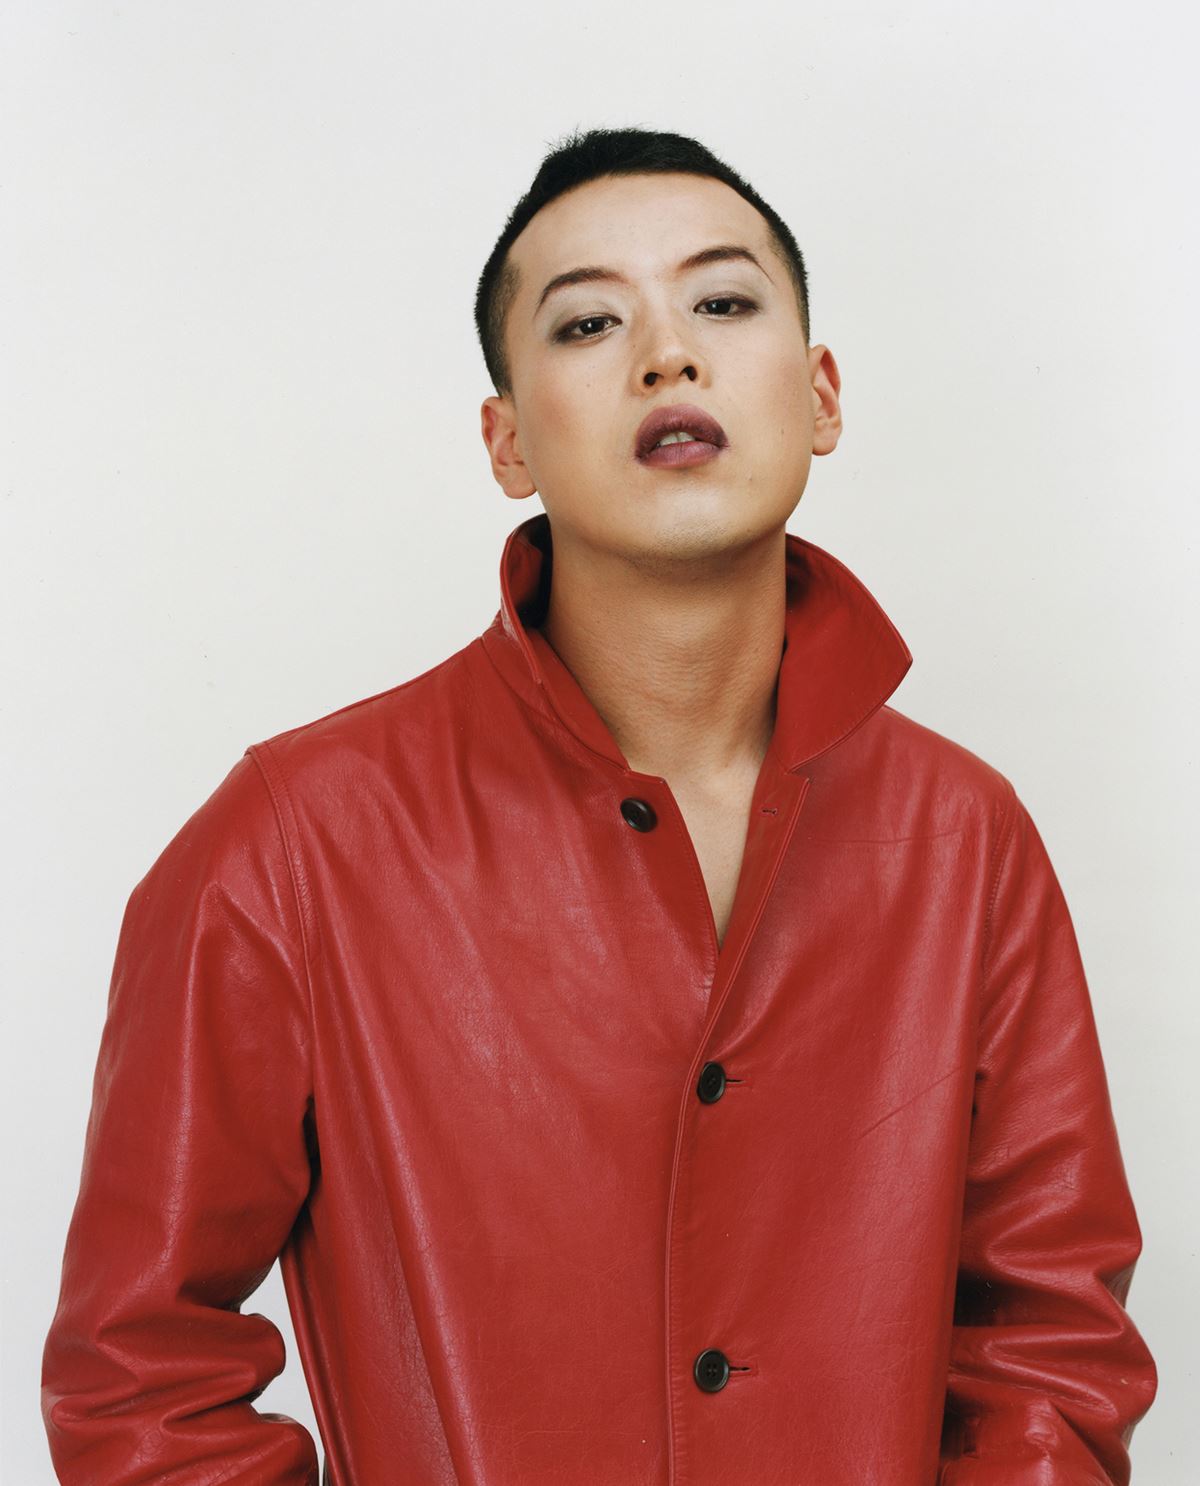 《赤い革のコートを着ている》2002 年 ©Takano Ryudai, Courtesy of Yumiko Chiba Associates